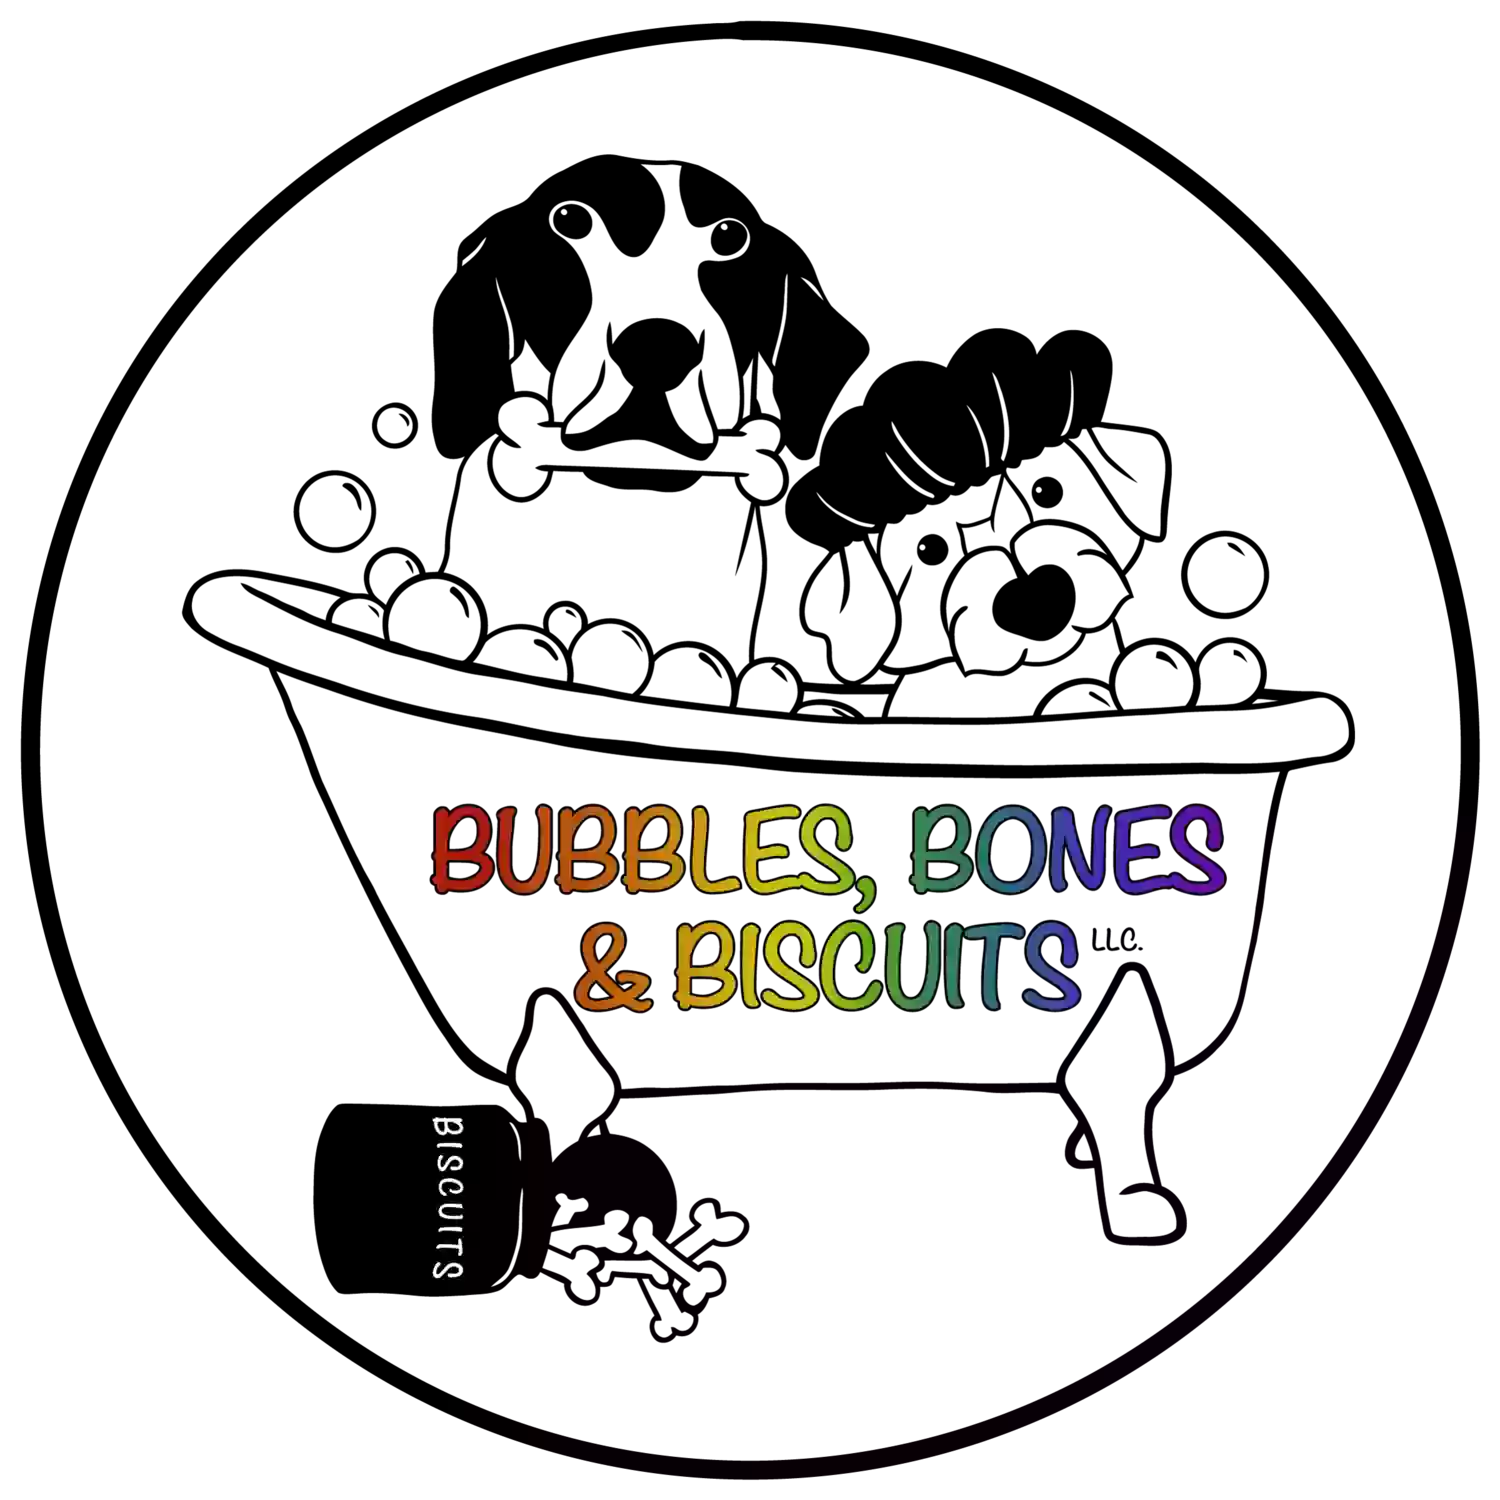 Bubbles, Bones & Biscuits, LLC